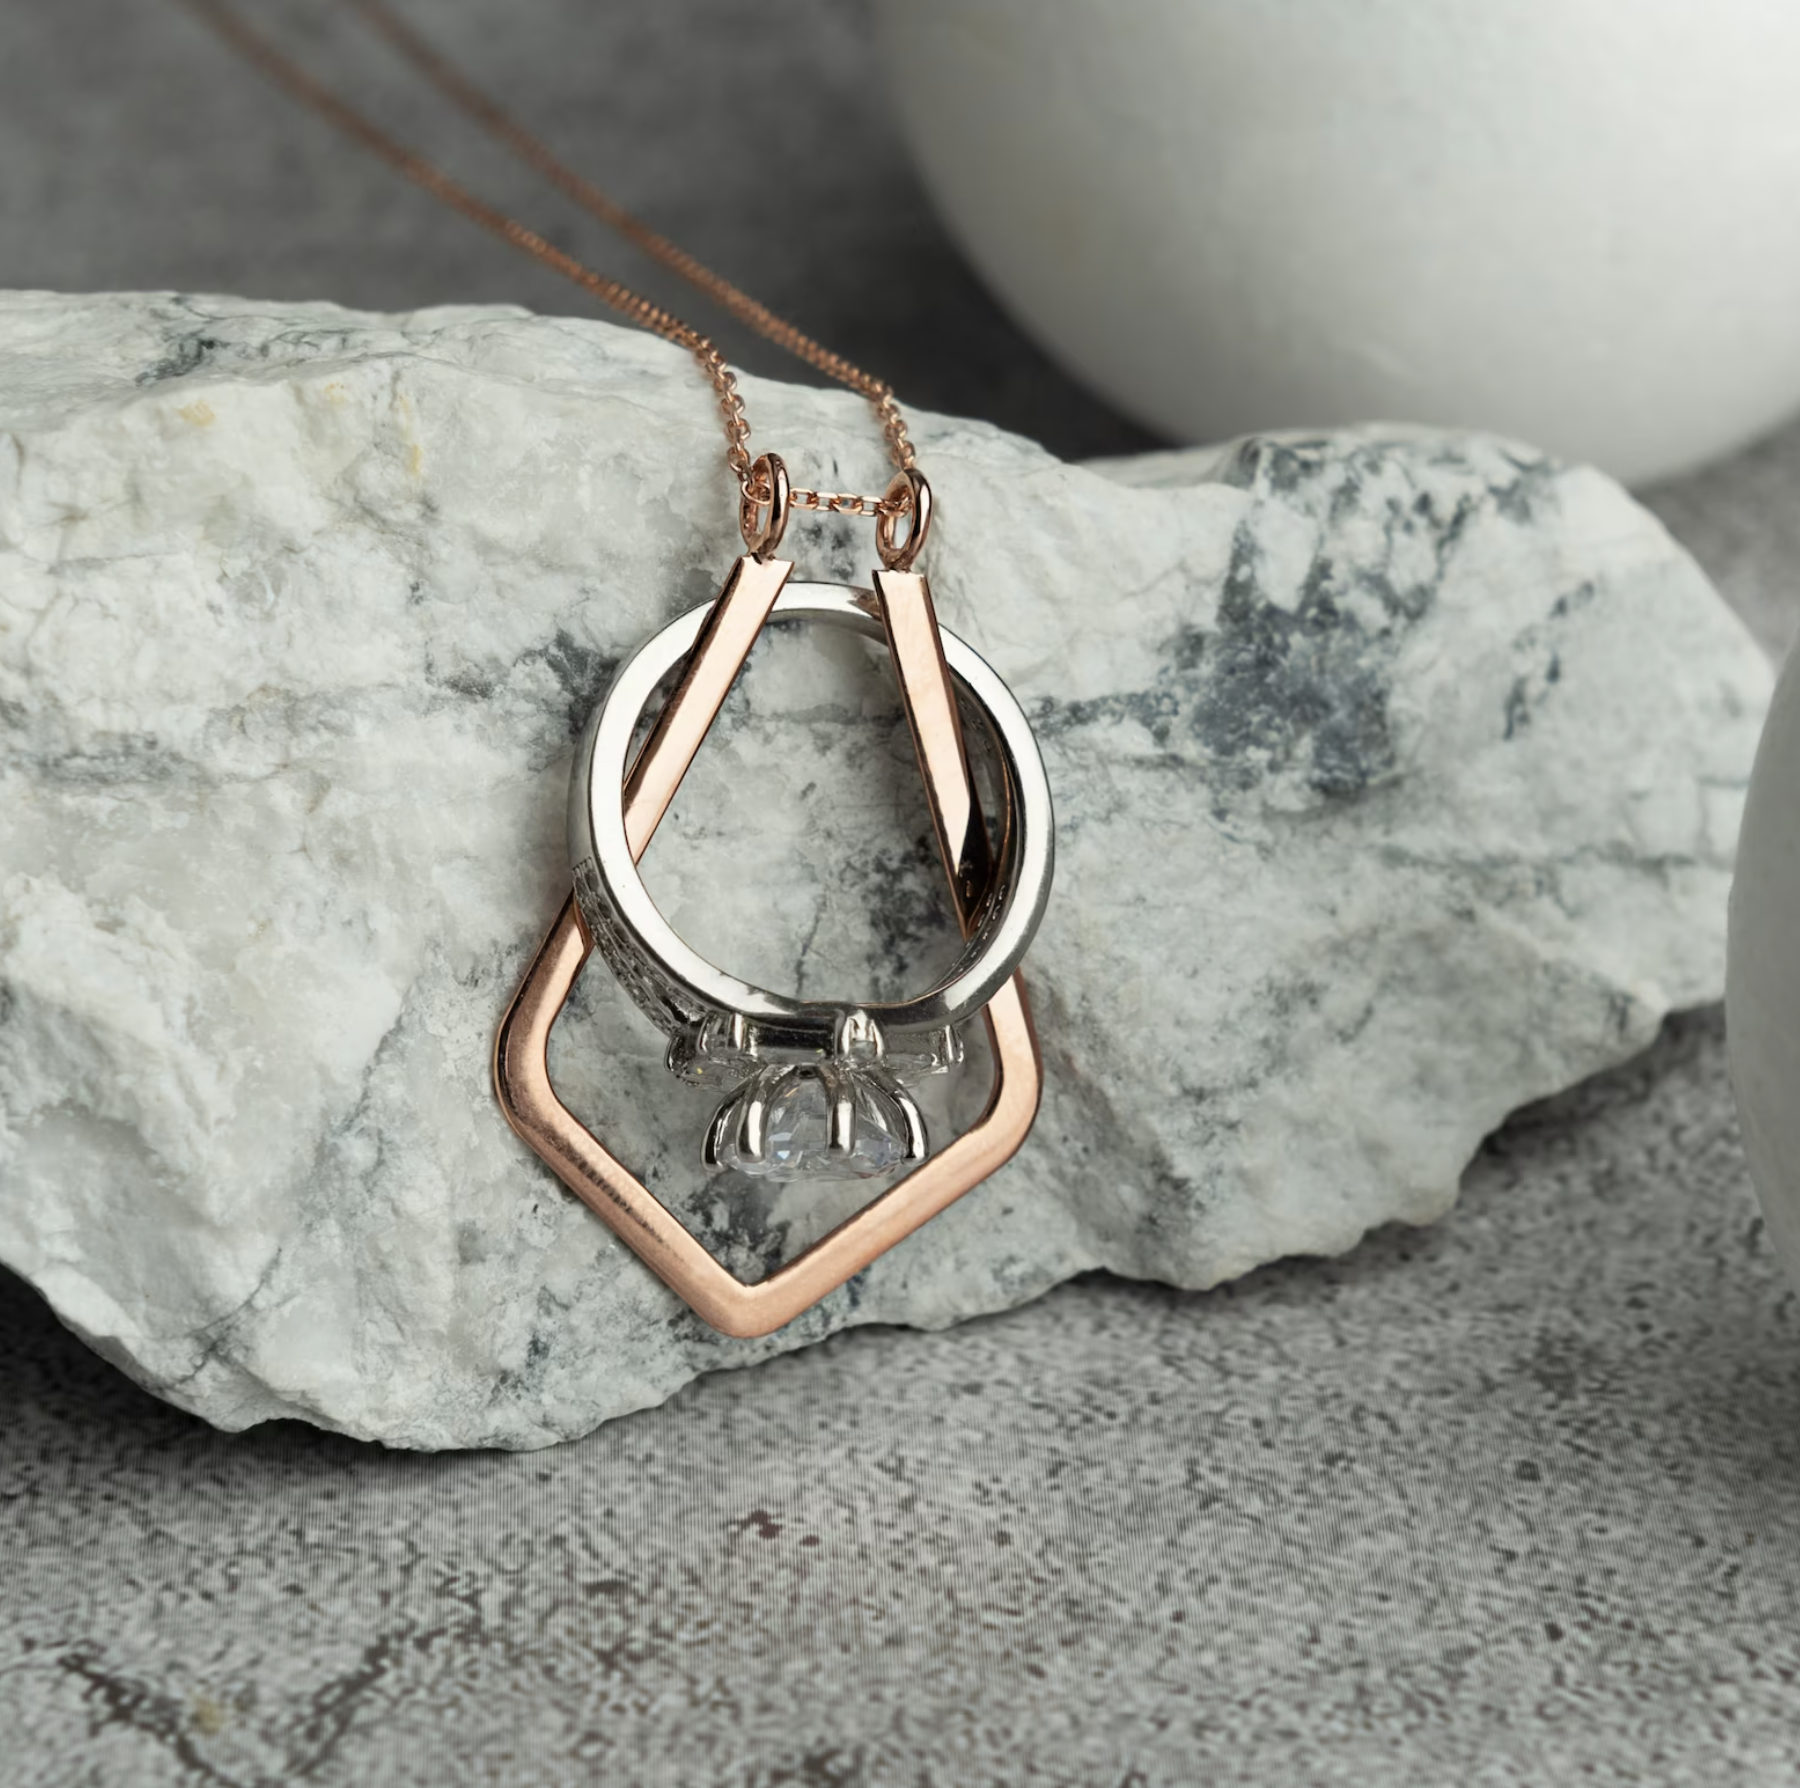 Fishtail Ring Holder Necklace, Ring Keeper Pendant, Ocean Lover Gift,